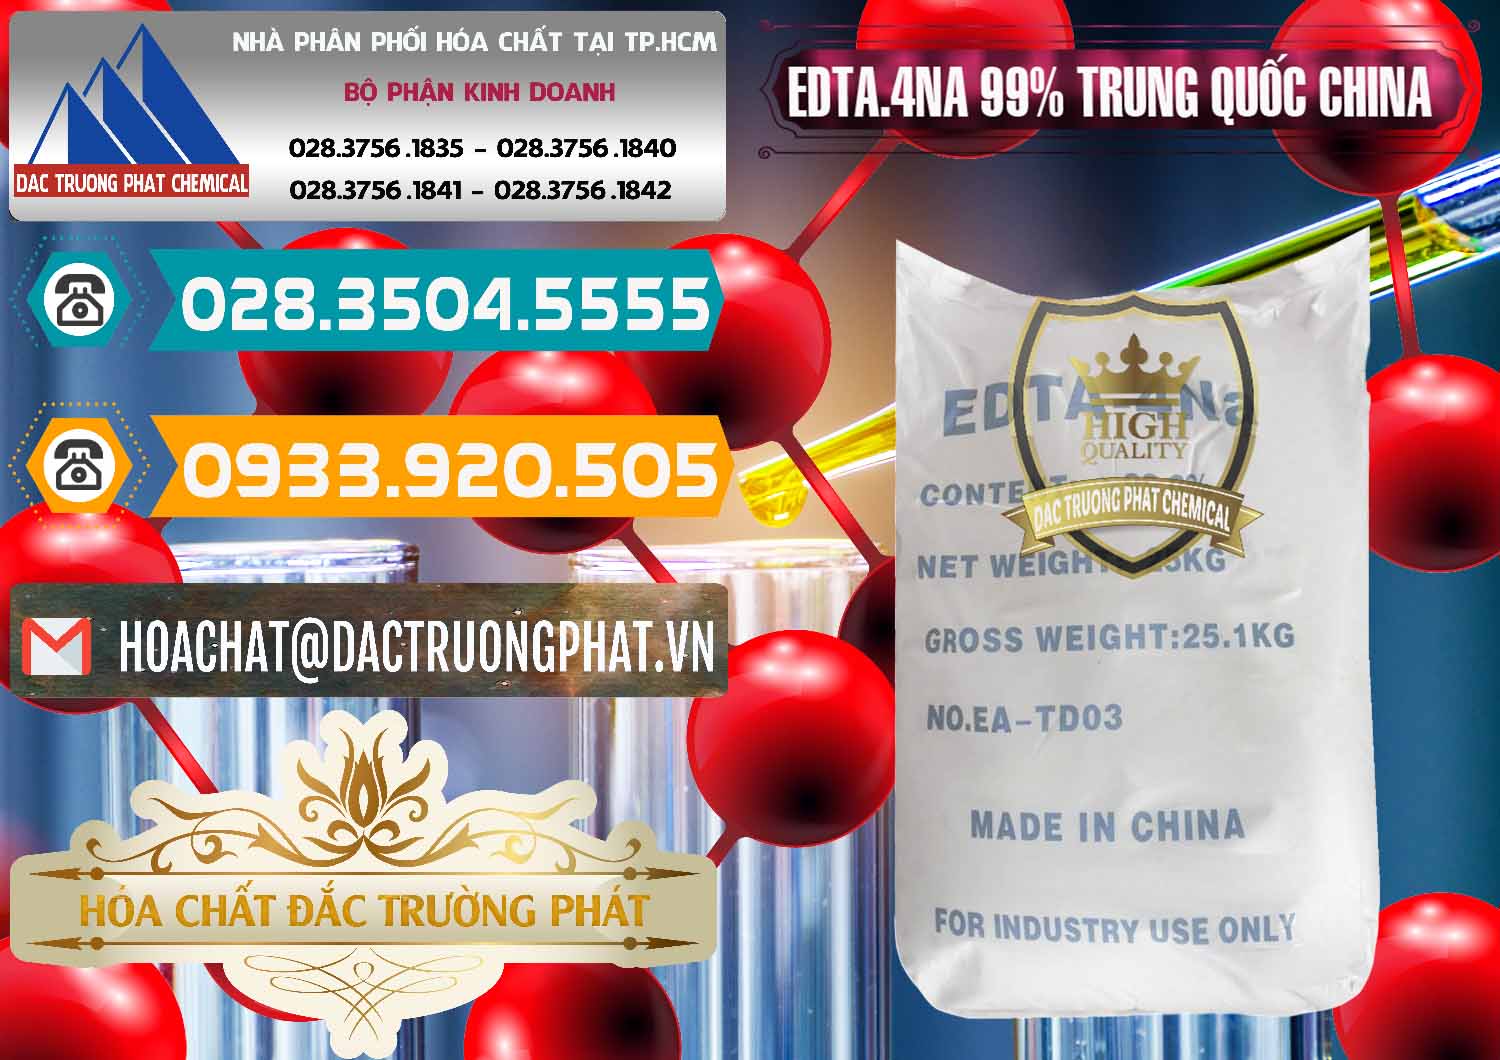 Cty chuyên kinh doanh _ bán EDTA.4NA - EDTA Muối 99% Trung Quốc China - 0292 - Công ty chuyên cung ứng ( phân phối ) hóa chất tại TP.HCM - congtyhoachat.vn